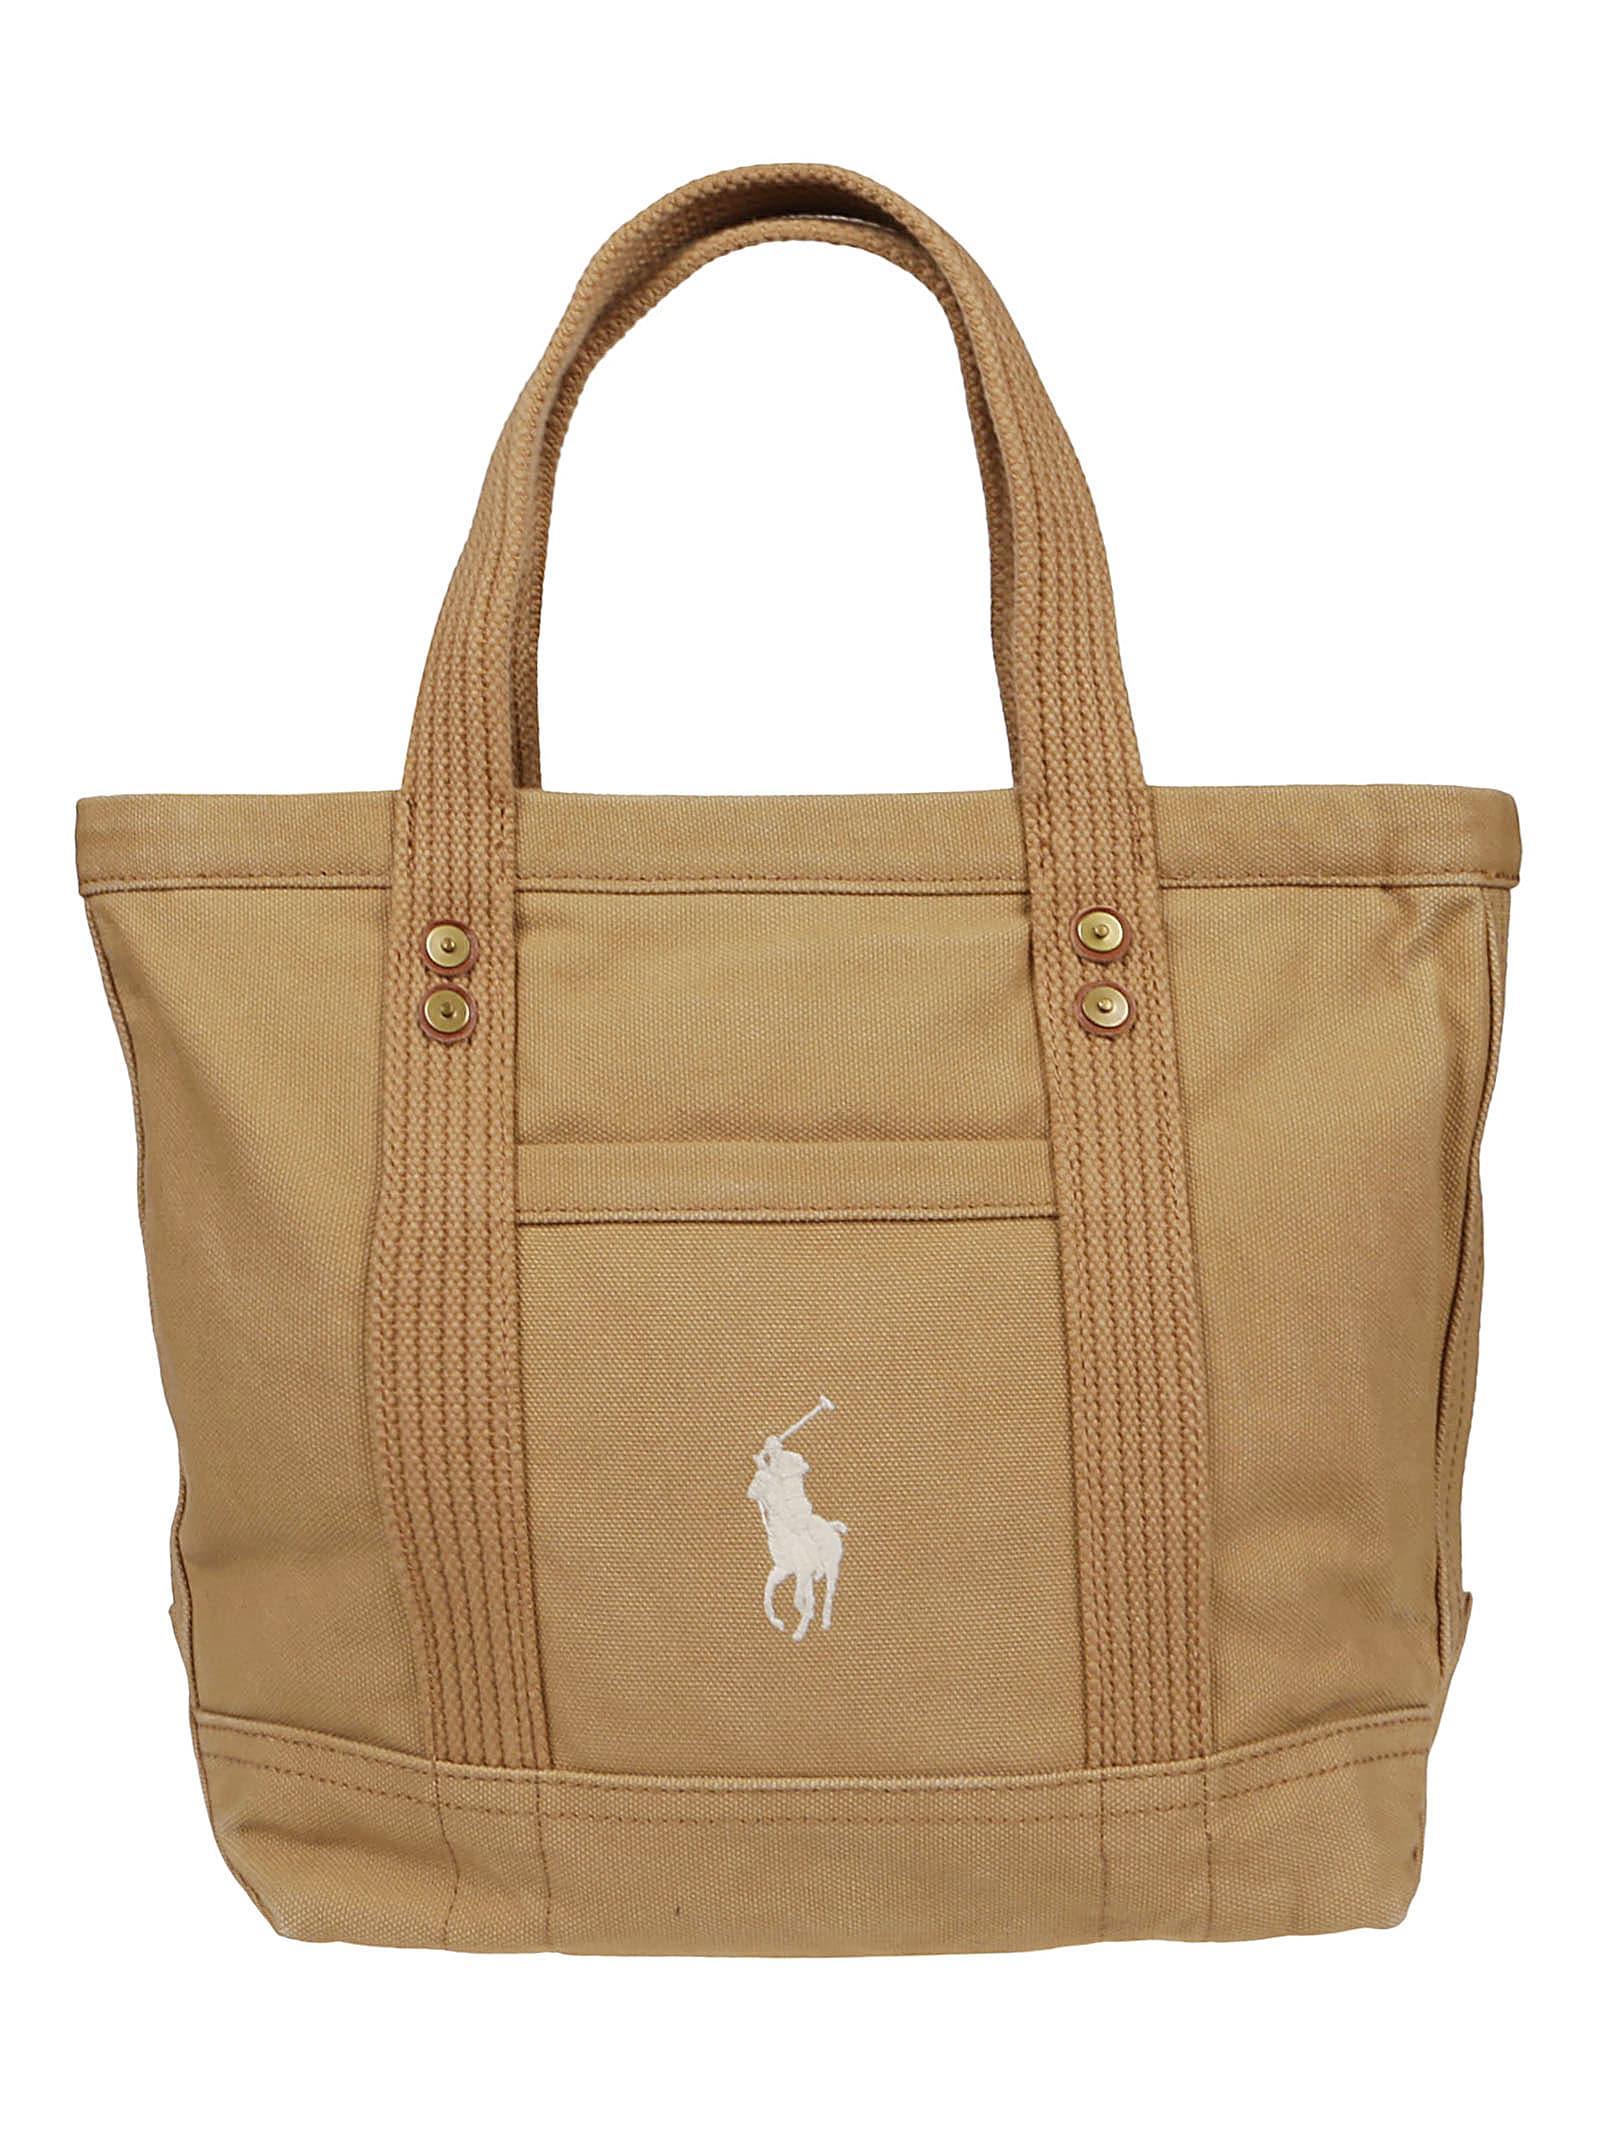 Ralph Lauren Beige Cotton Shopping Bag